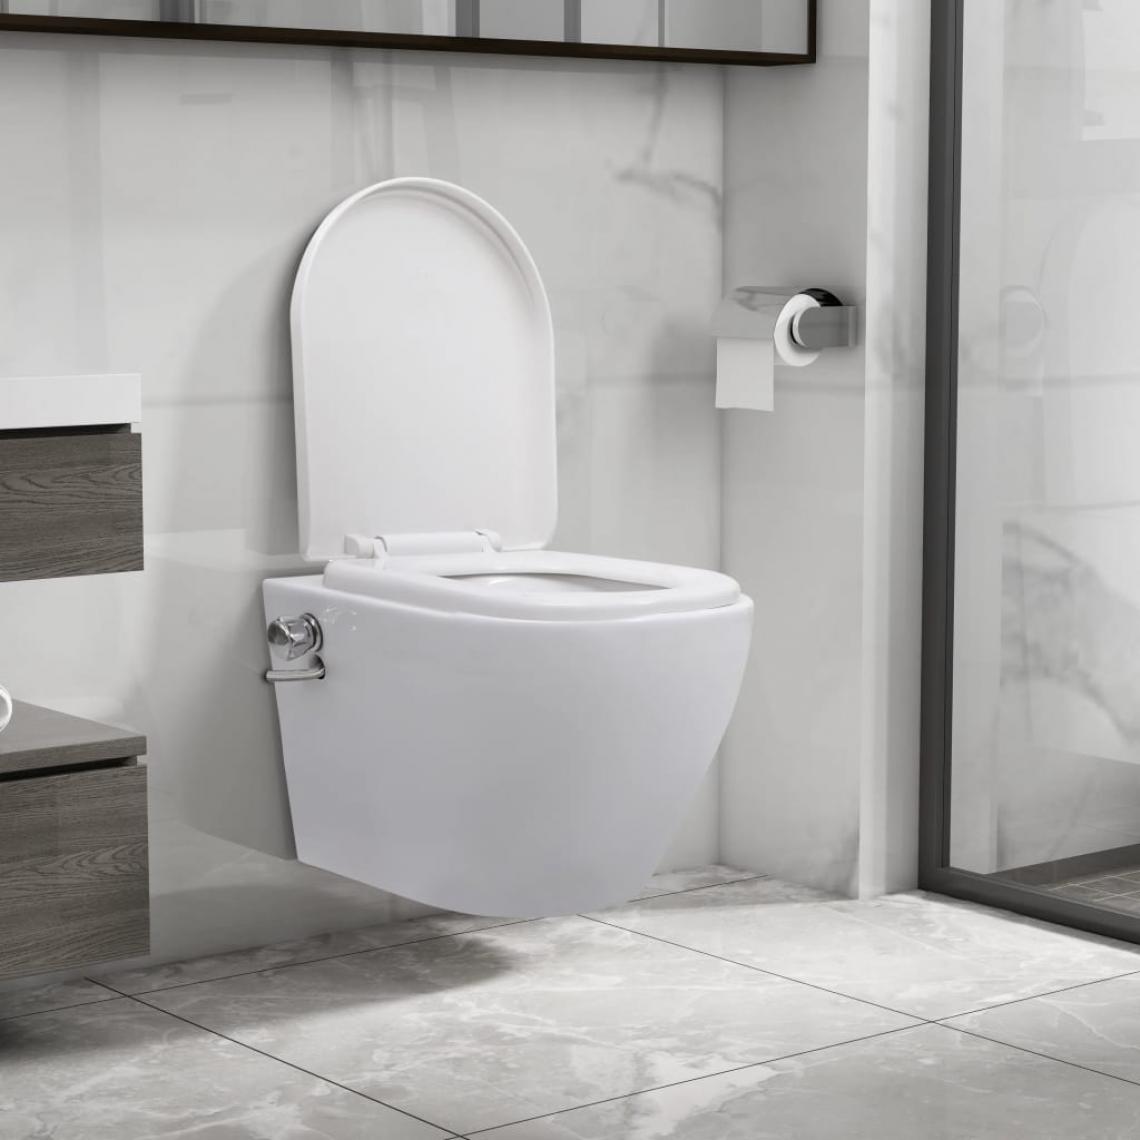 Icaverne - Superbe Toilettes et bidets reference Brazzaville Toilette murale sans bord à fonction de bidet Céramique Blanc - WC